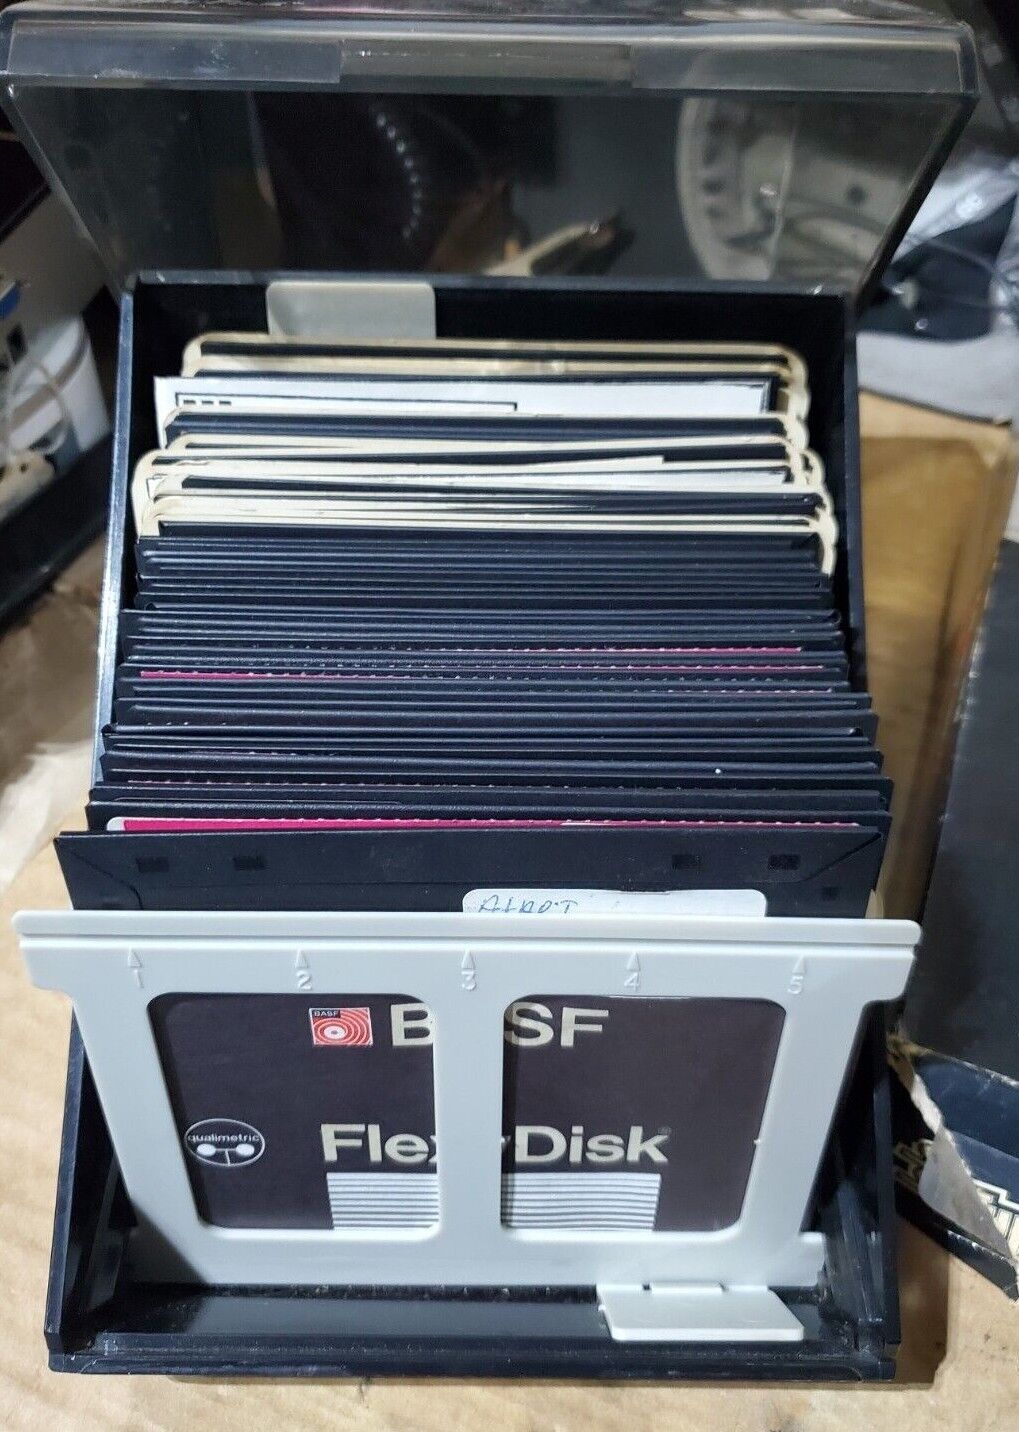 5.25” Floppy Disks 30+ Disks full of Games  Atari